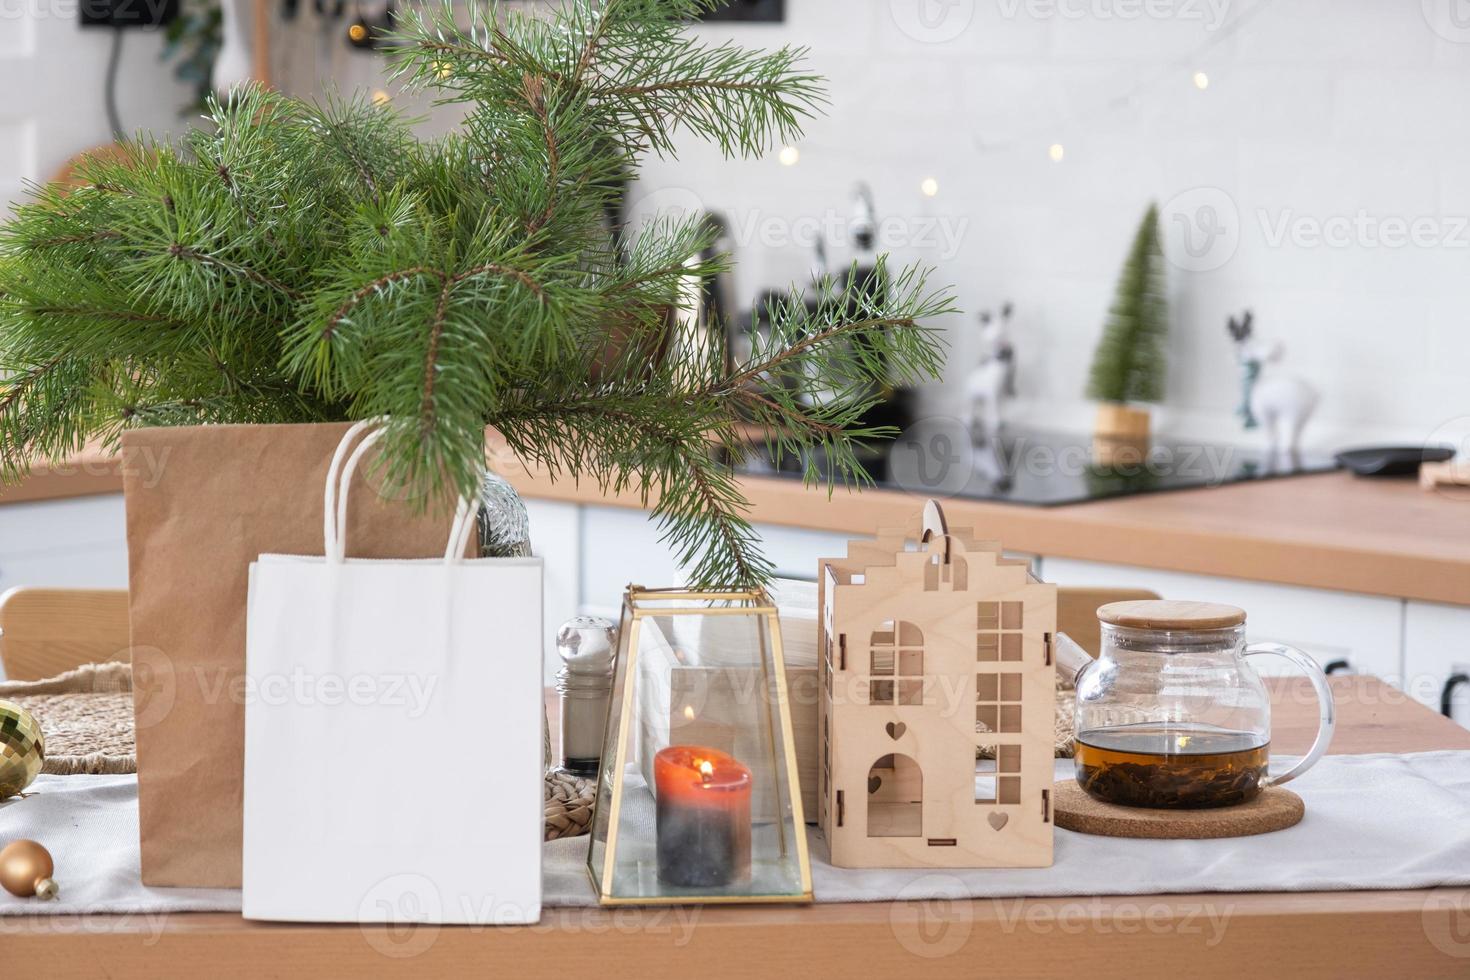 les maquettes de paquets en papier sont sur la table de cuisine servie décorée pour noël. courses et cadeaux, cadeaux et plats cuisinés sont livrés et préparés pour la nouvelle année photo